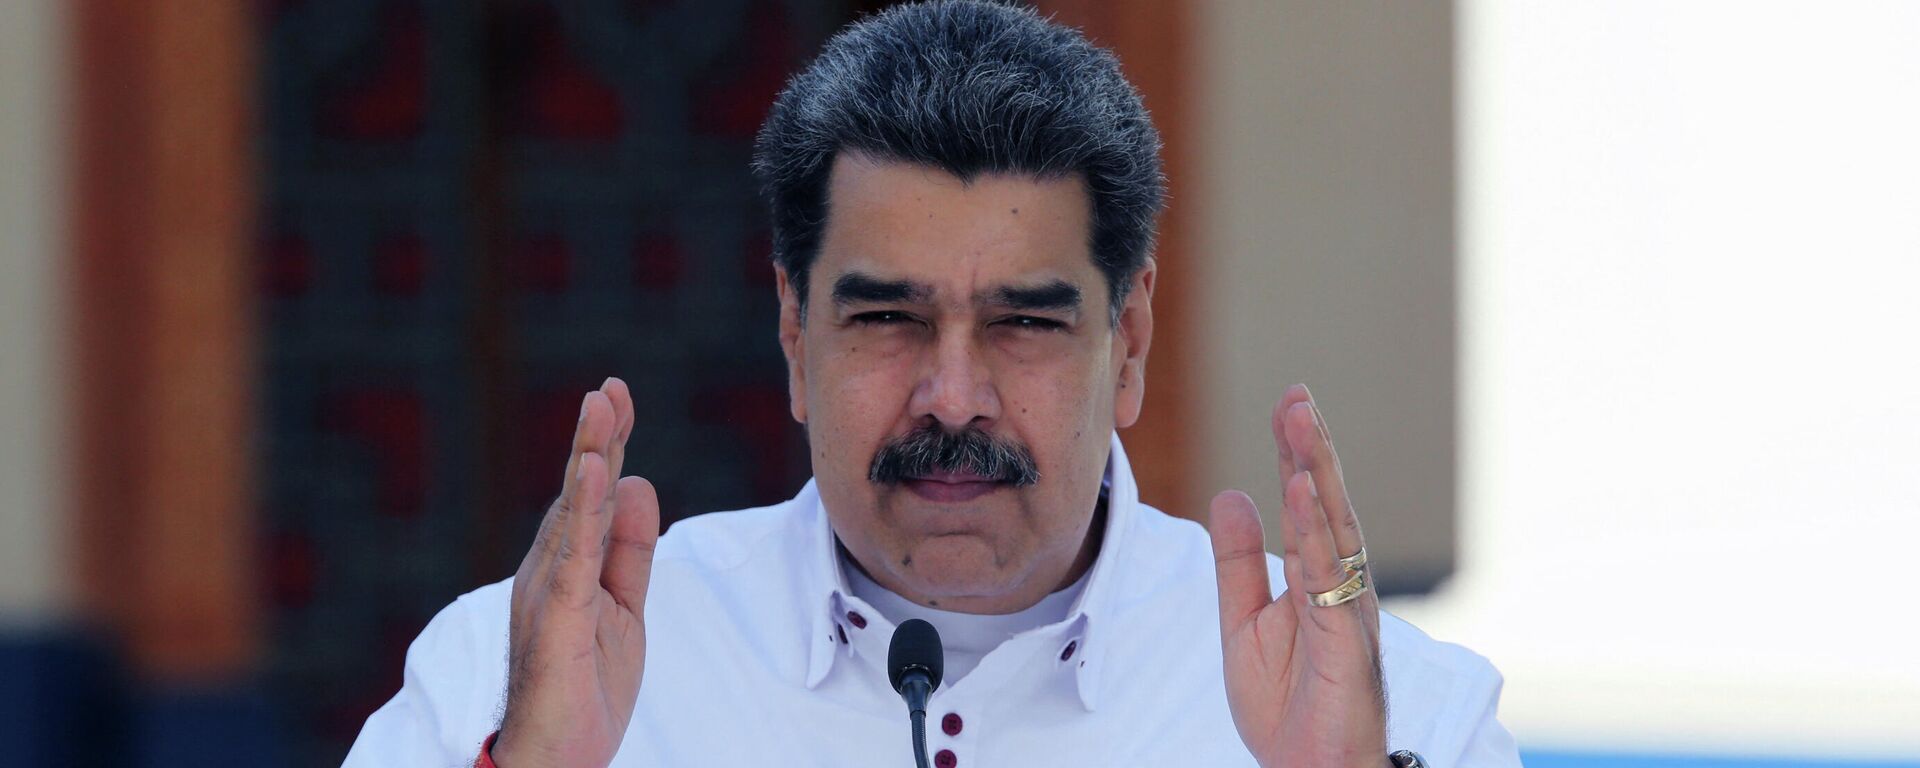 Nicolás Maduro, presidente de Venezuela - Sputnik Mundo, 1920, 17.11.2021